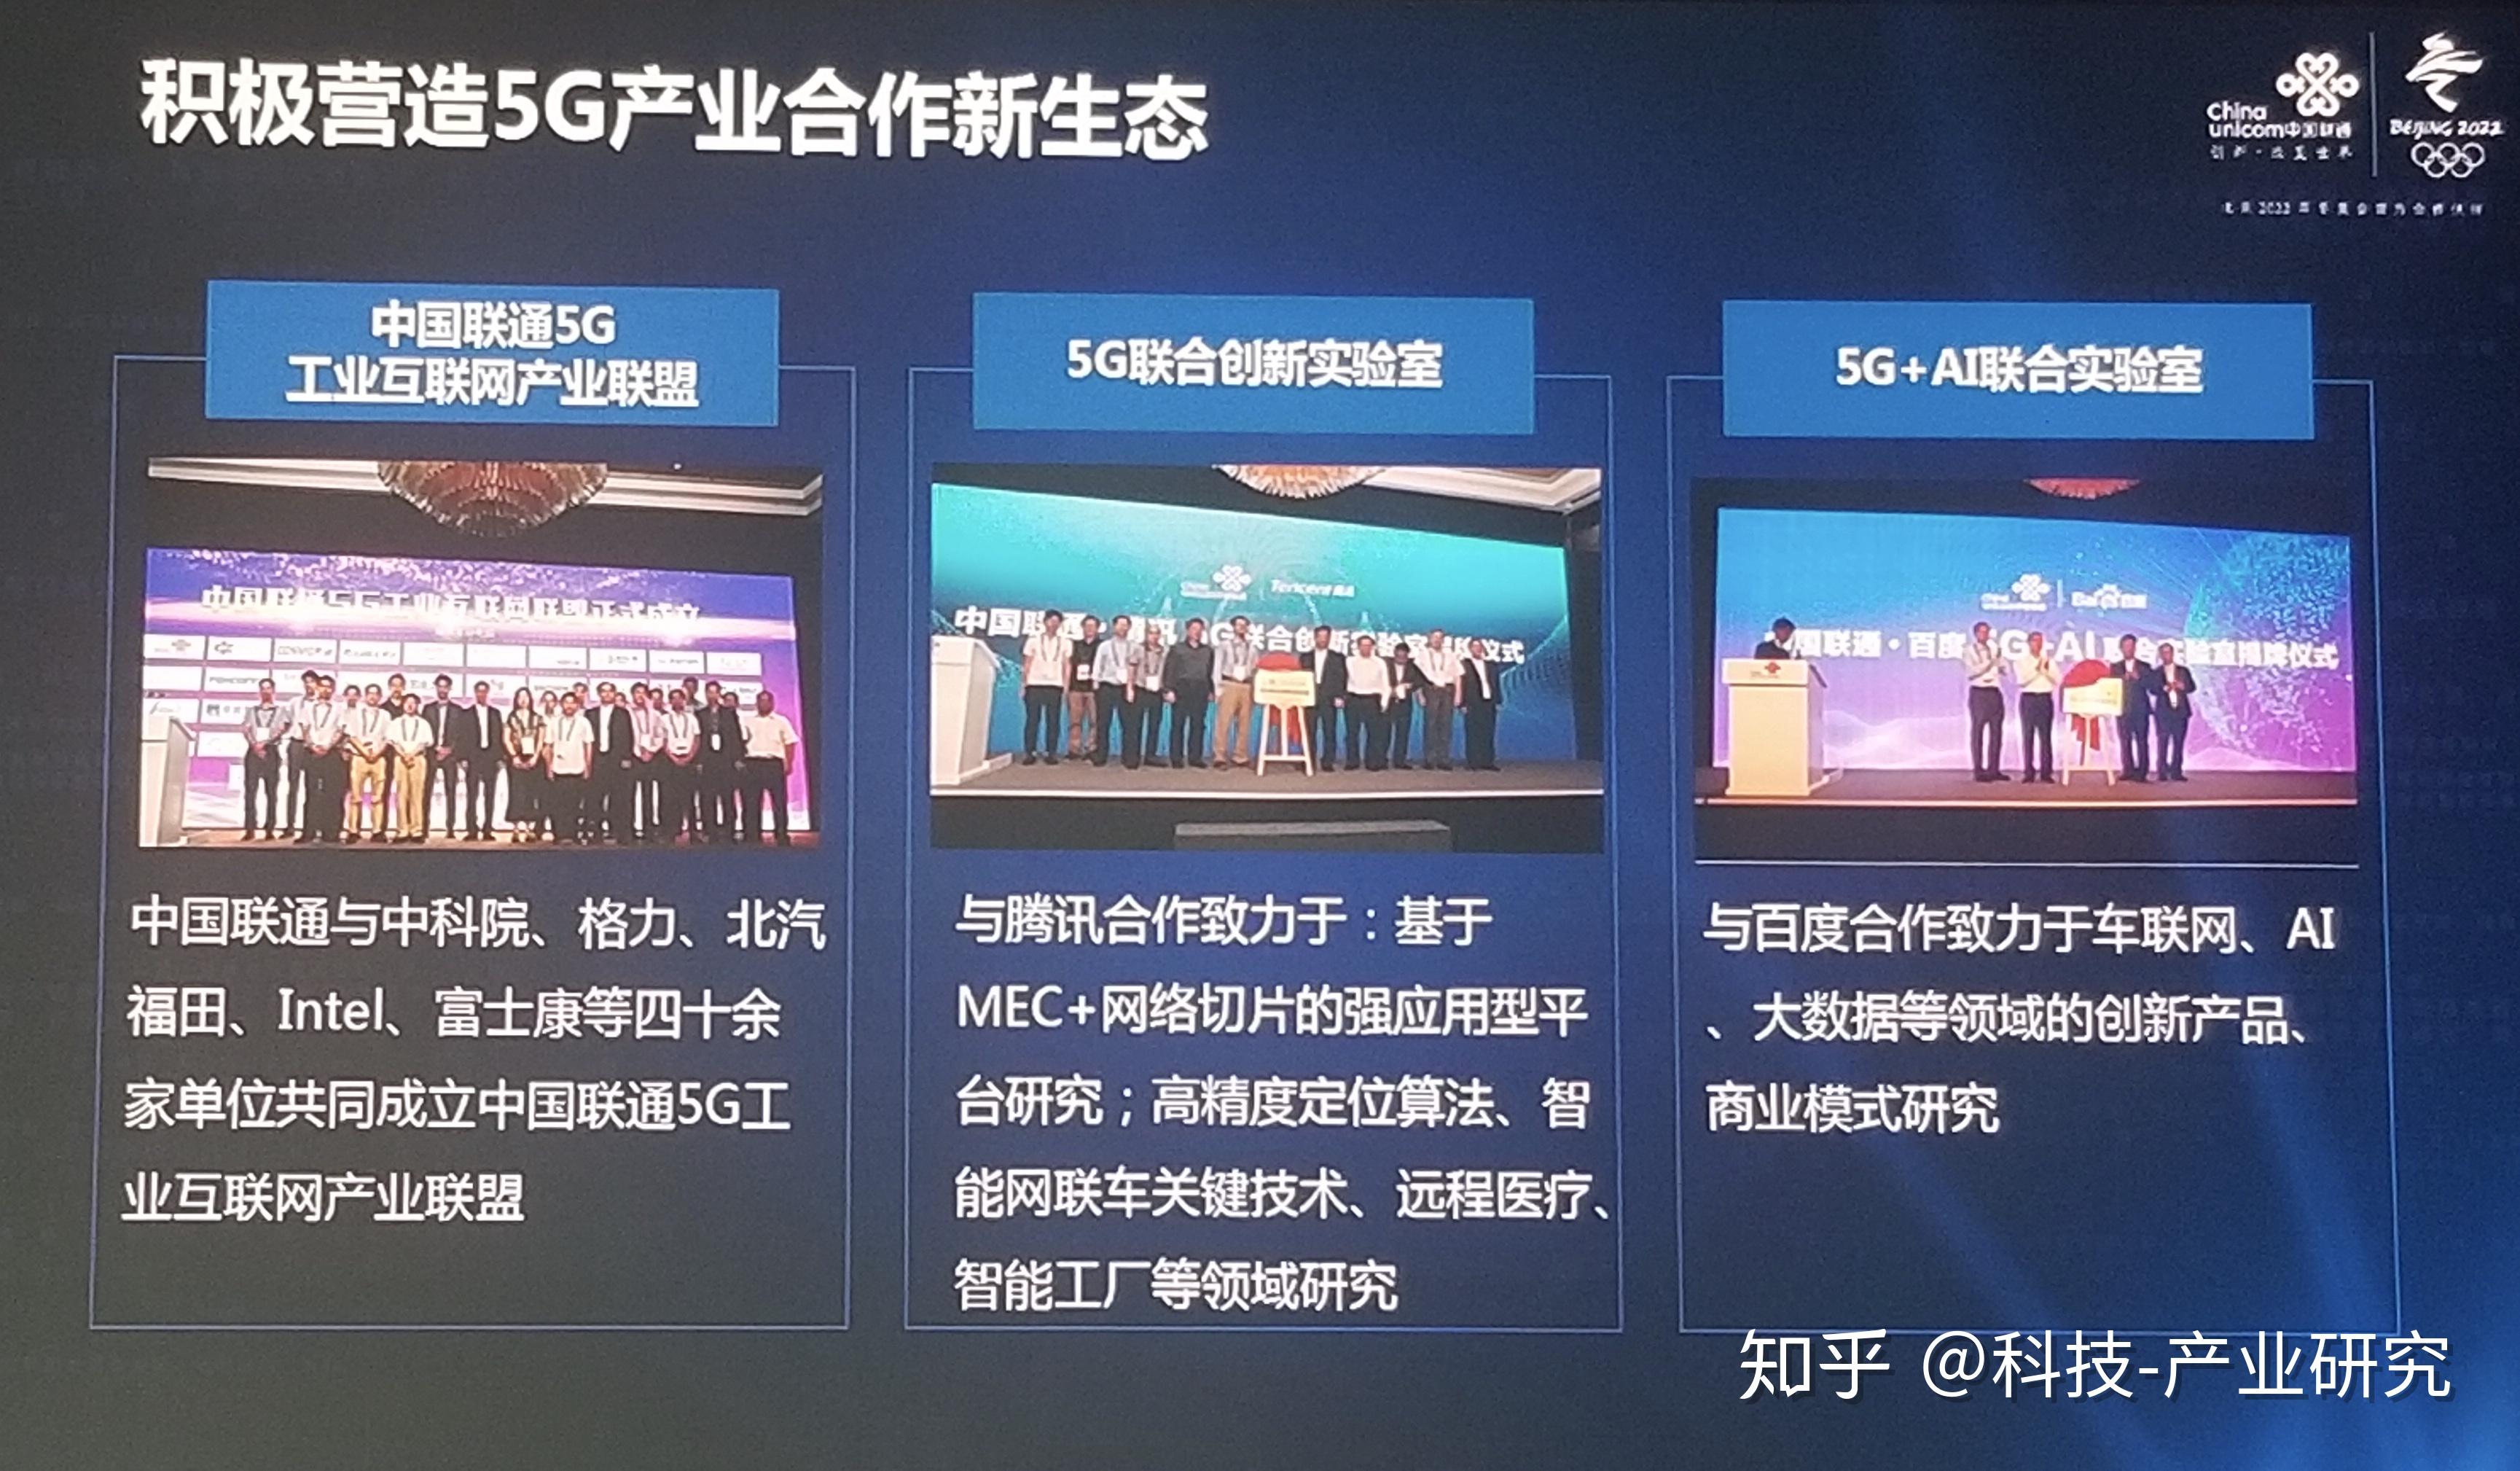 2018国际信息通信展5g创新高峰论坛45g研究进展和业务应用探索中国